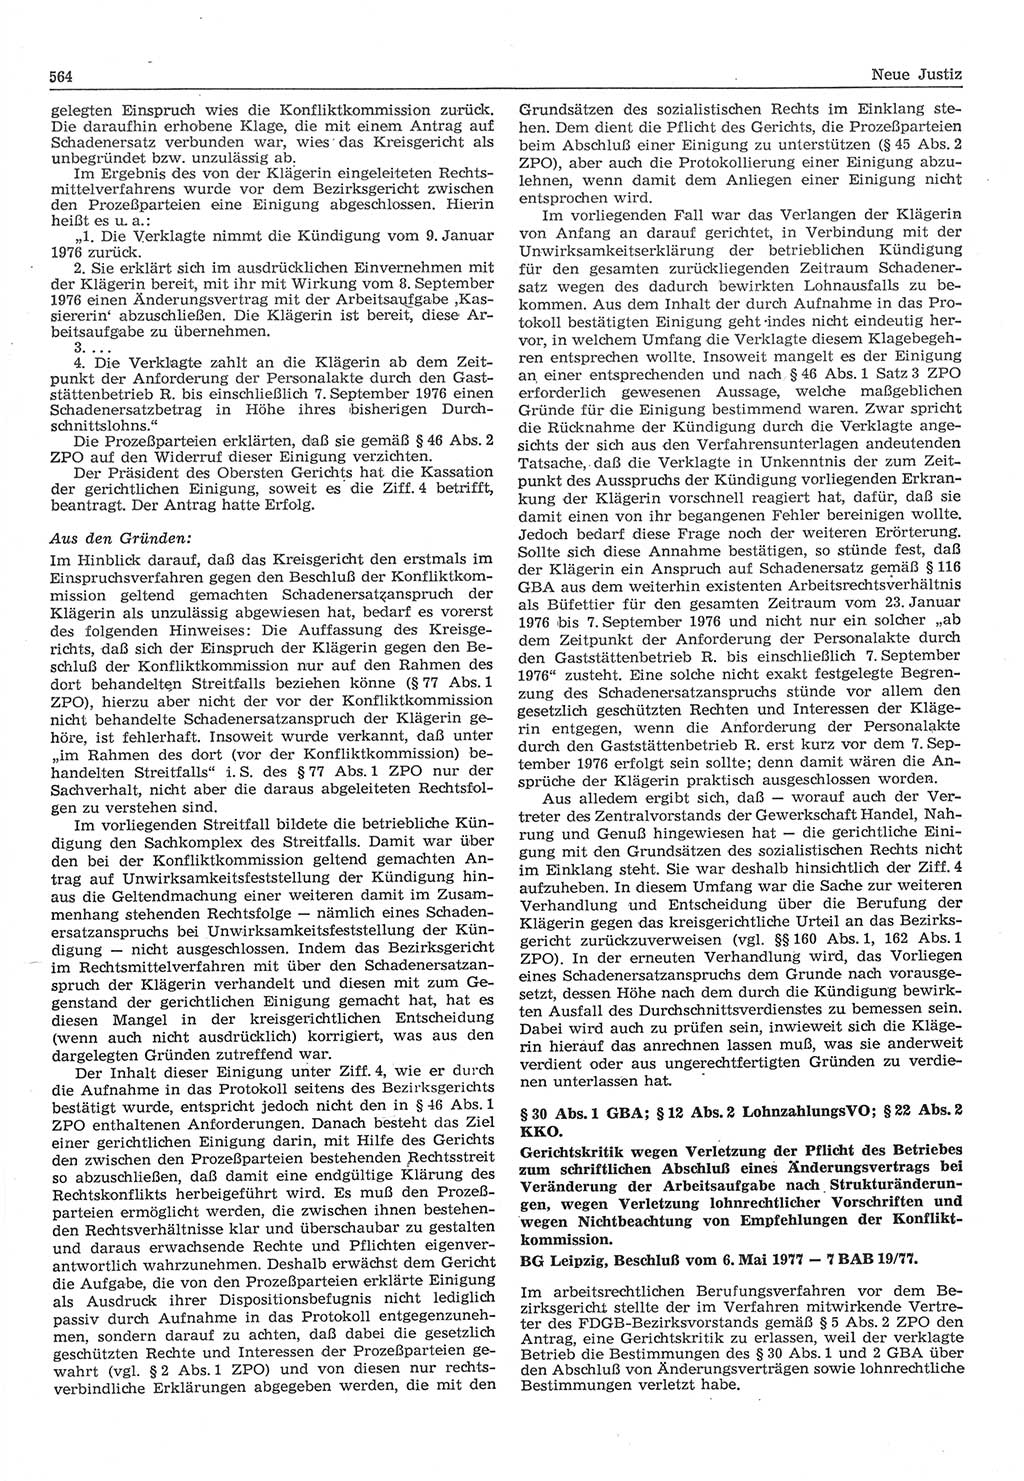 Neue Justiz (NJ), Zeitschrift für Recht und Rechtswissenschaft-Zeitschrift, sozialistisches Recht und Gesetzlichkeit, 31. Jahrgang 1977, Seite 564 (NJ DDR 1977, S. 564)